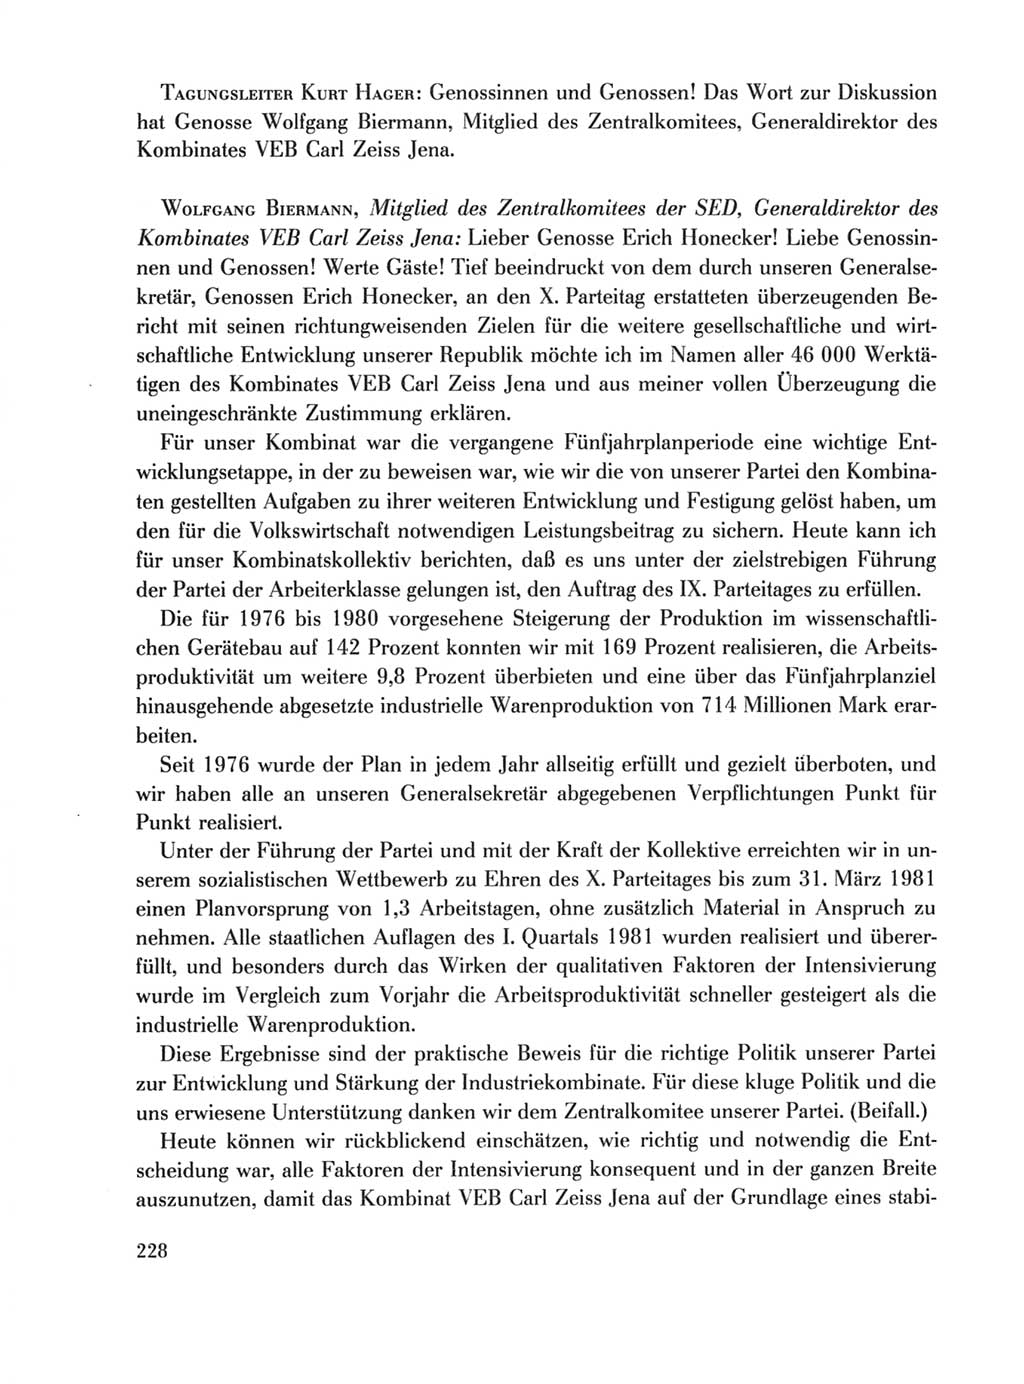 Protokoll der Verhandlungen des Ⅹ. Parteitages der Sozialistischen Einheitspartei Deutschlands (SED) [Deutsche Demokratische Republik (DDR)] 1981, Band 1, Seite 228 (Prot. Verh. Ⅹ. PT SED DDR 1981, Bd. 1, S. 228)